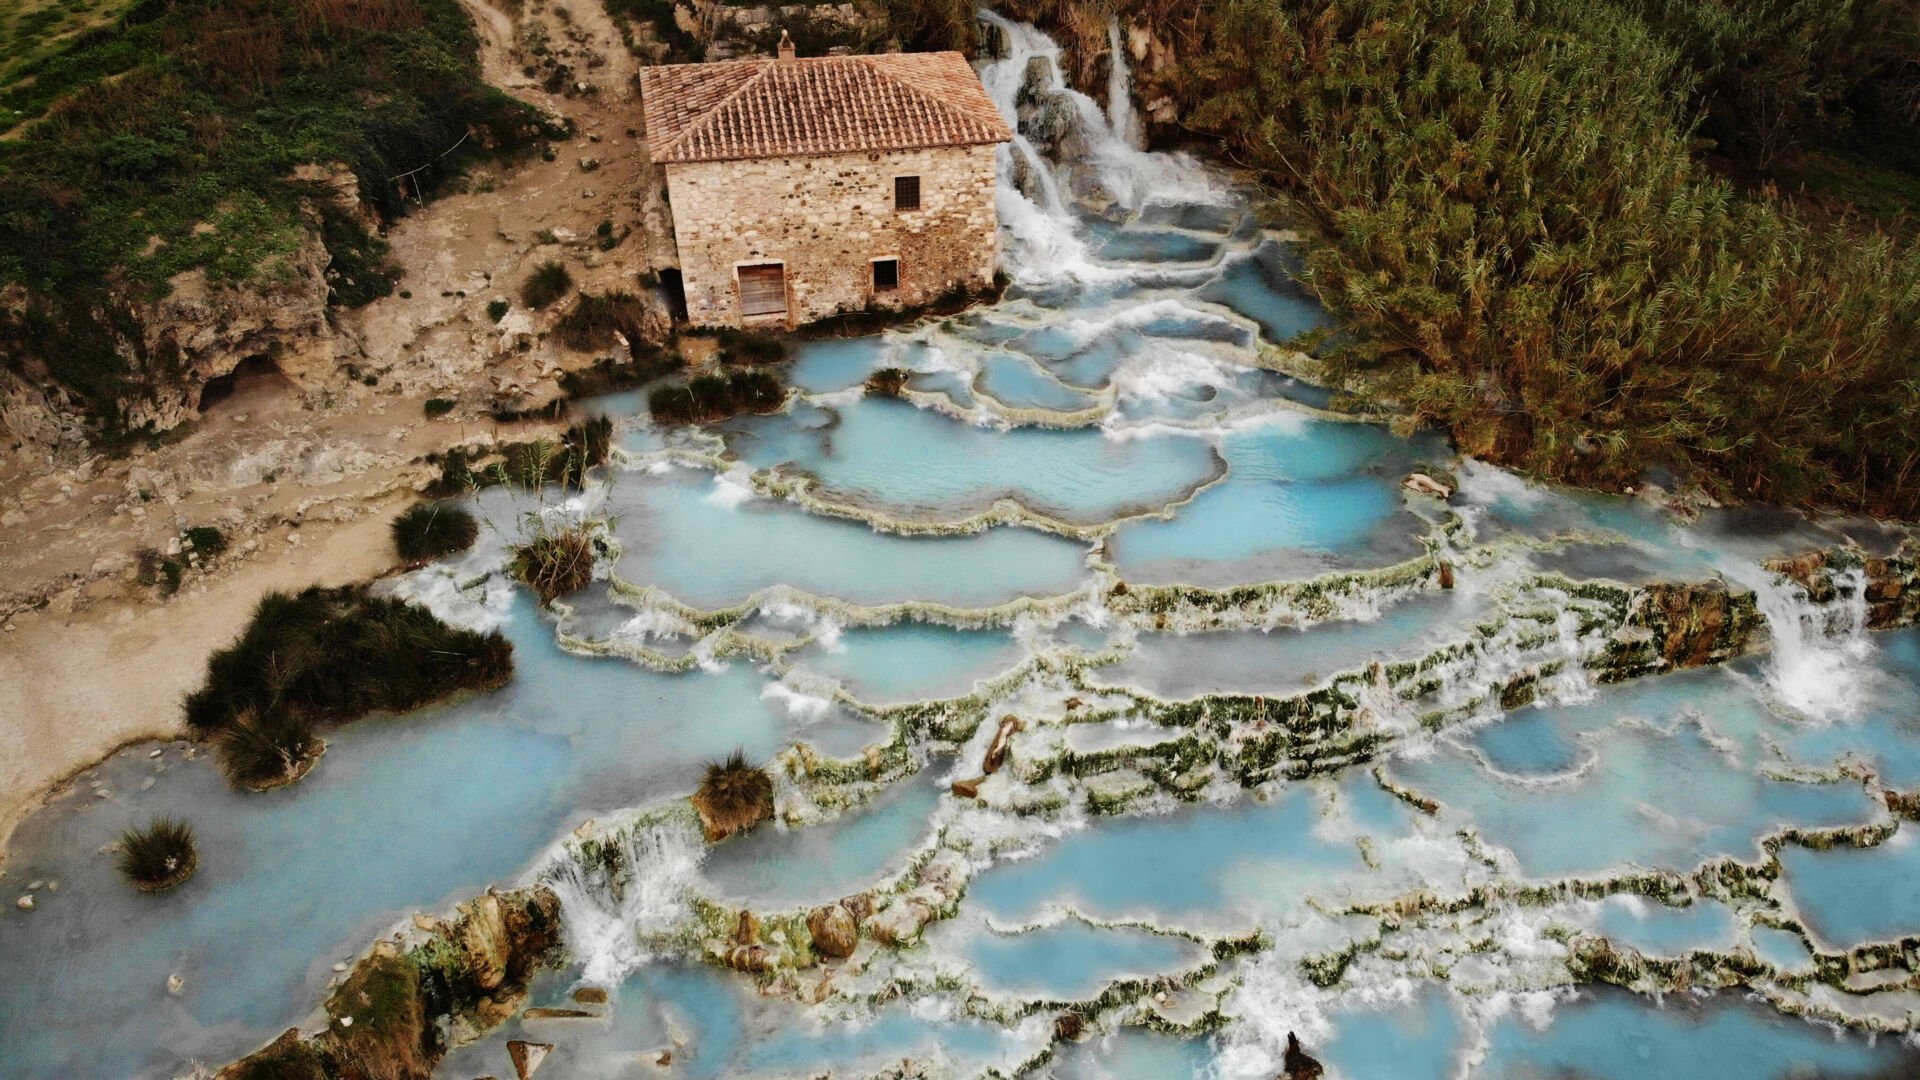 Natur pur: Diese 7 Orte in der Toskana musst du sehen!